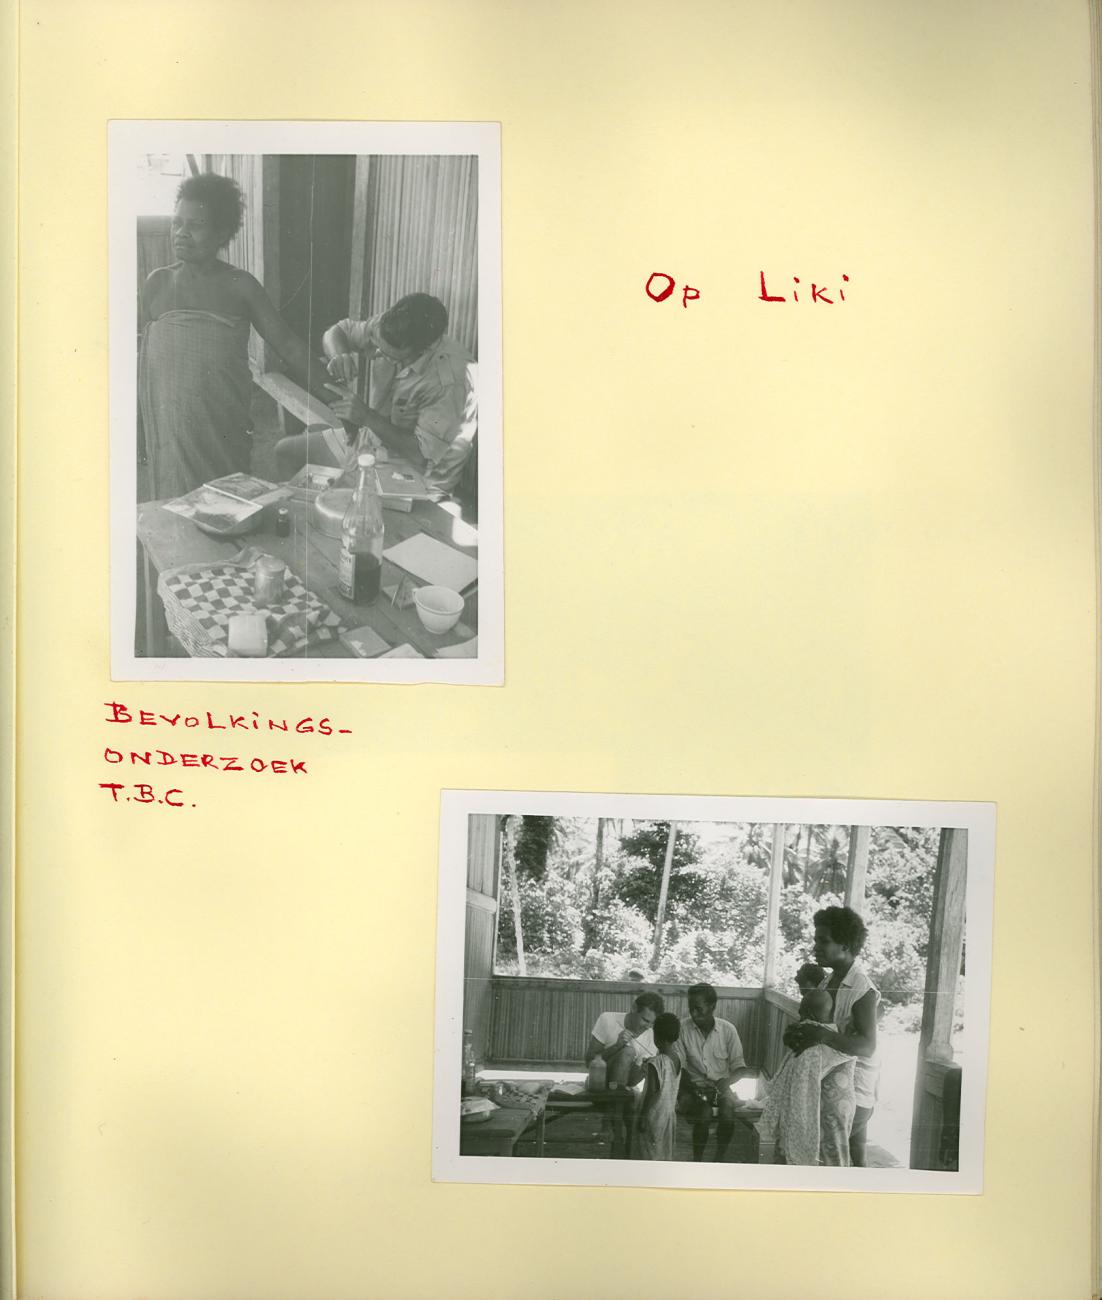 BD/83/31 - 
Onderzoek naar TBC onder de bevolking van Liki
